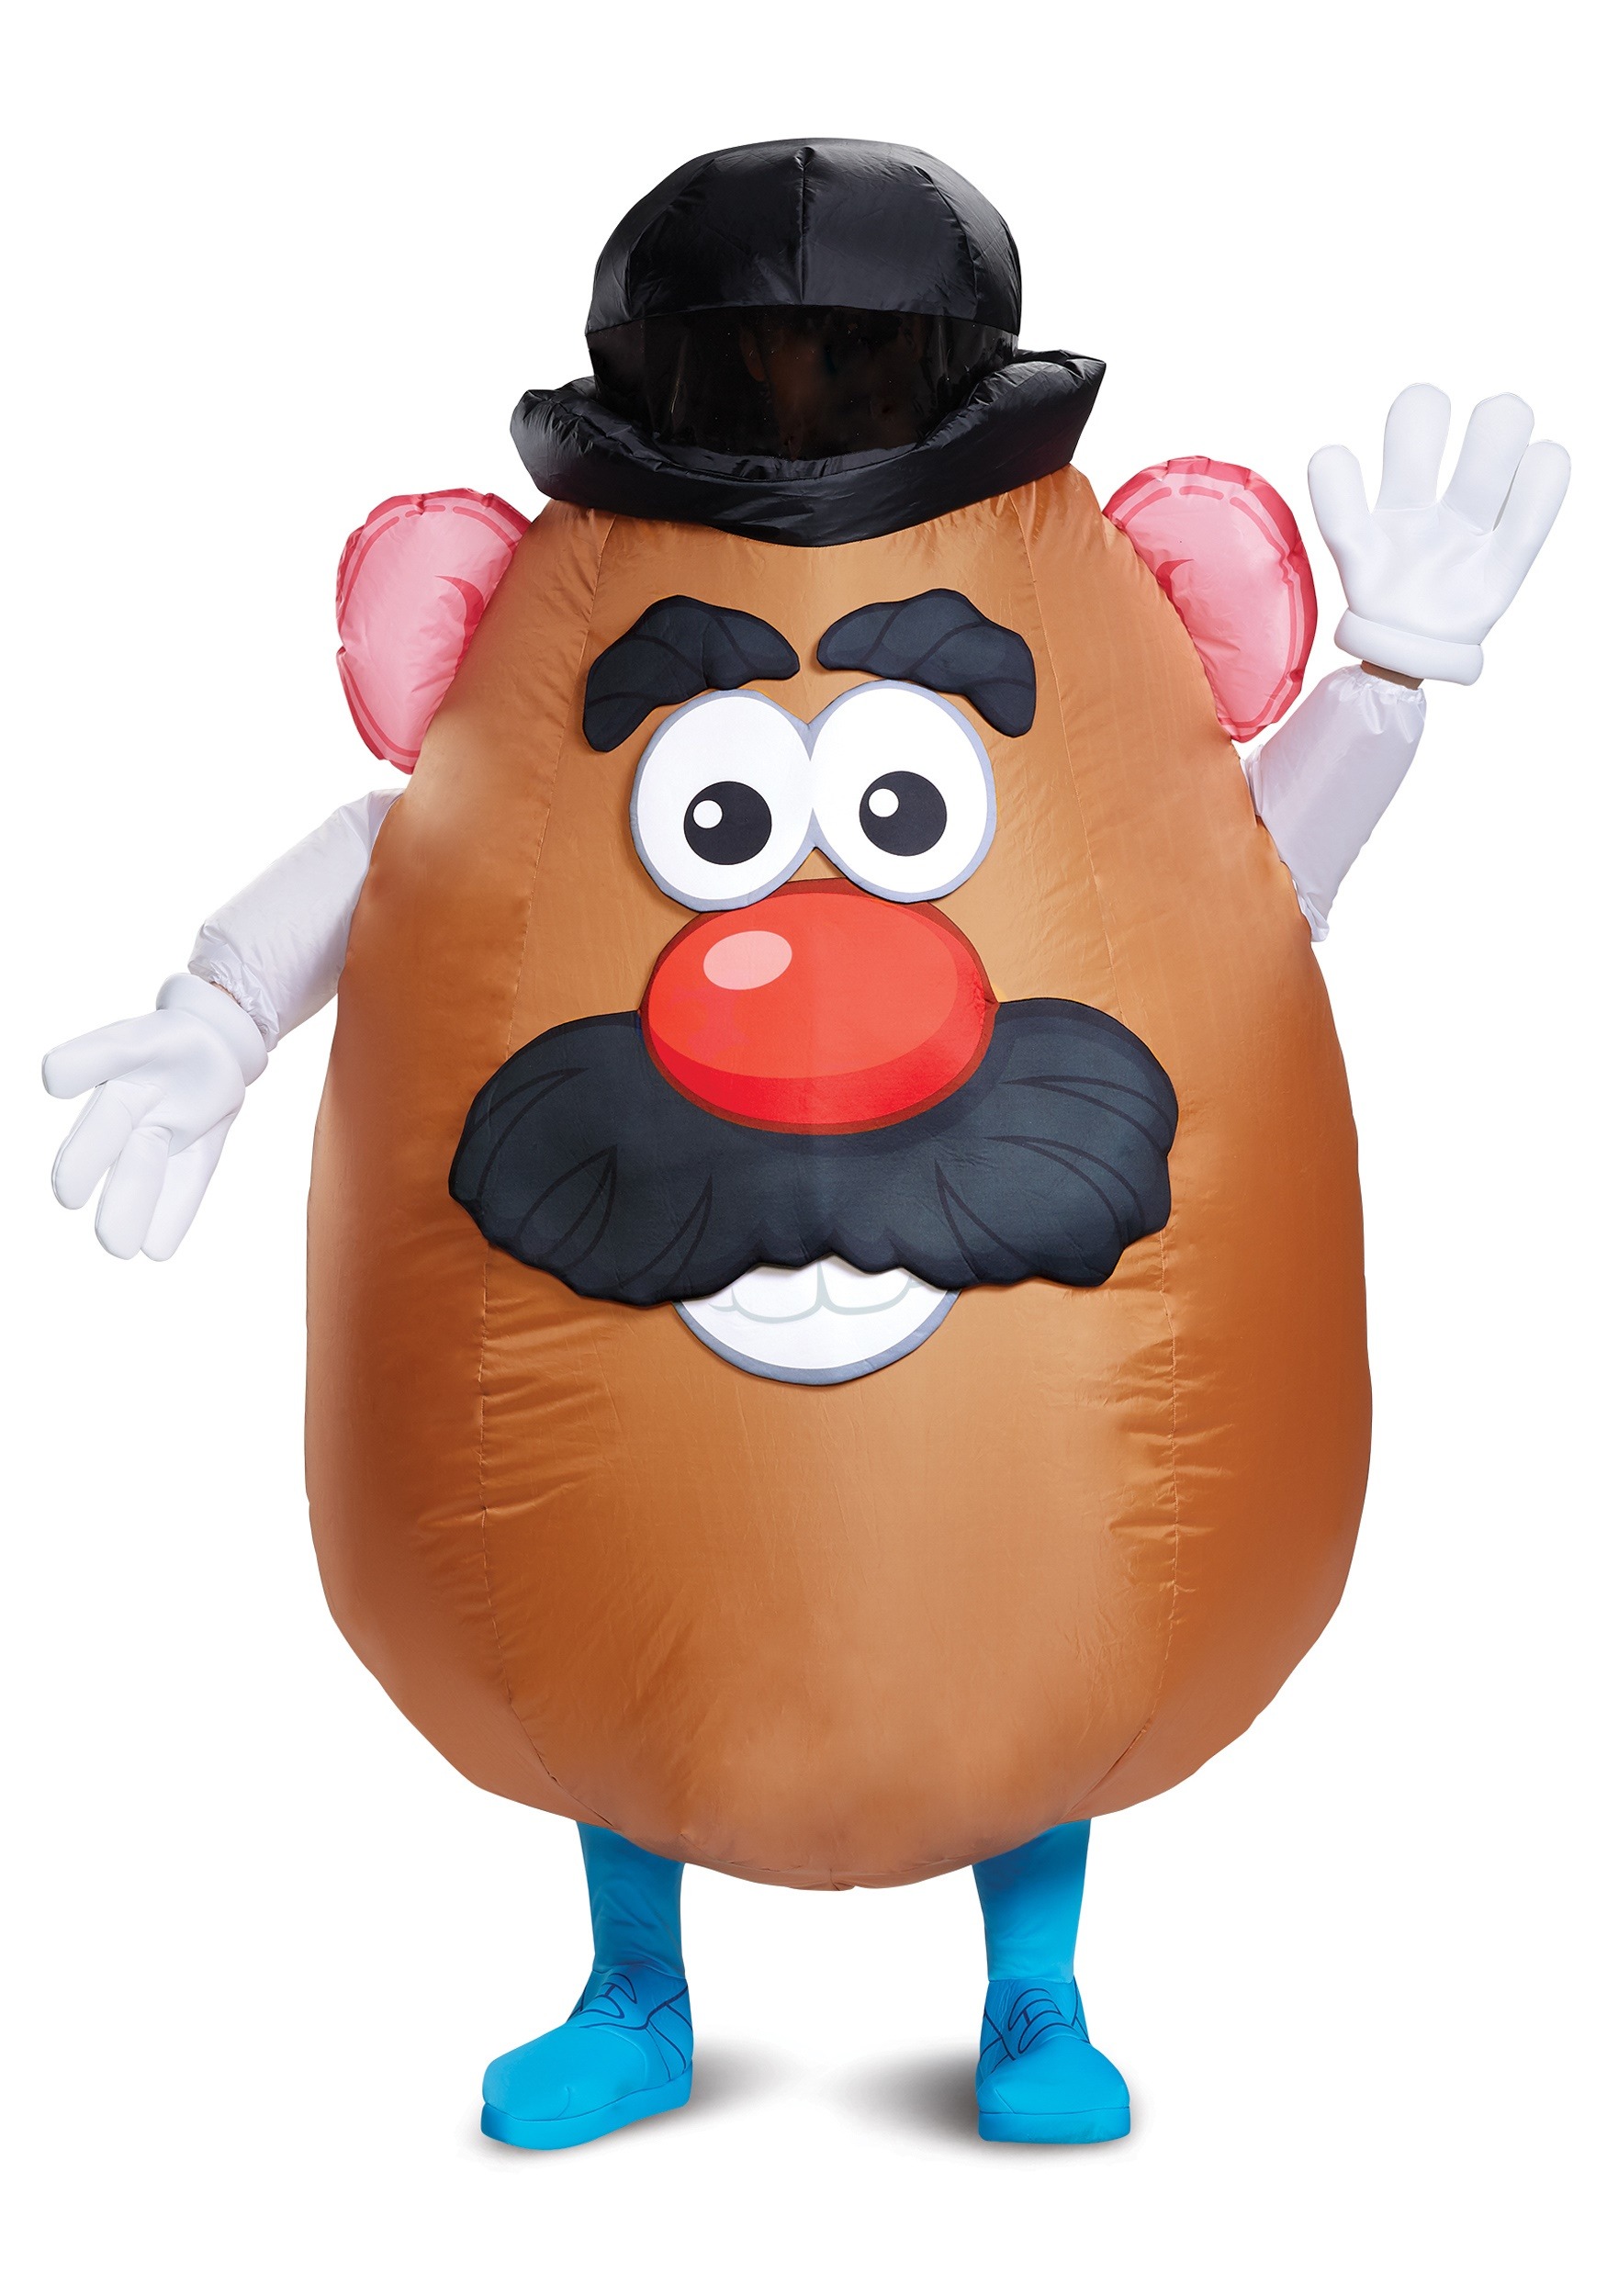 Mr. Potato Head Inflatable Adult Costume